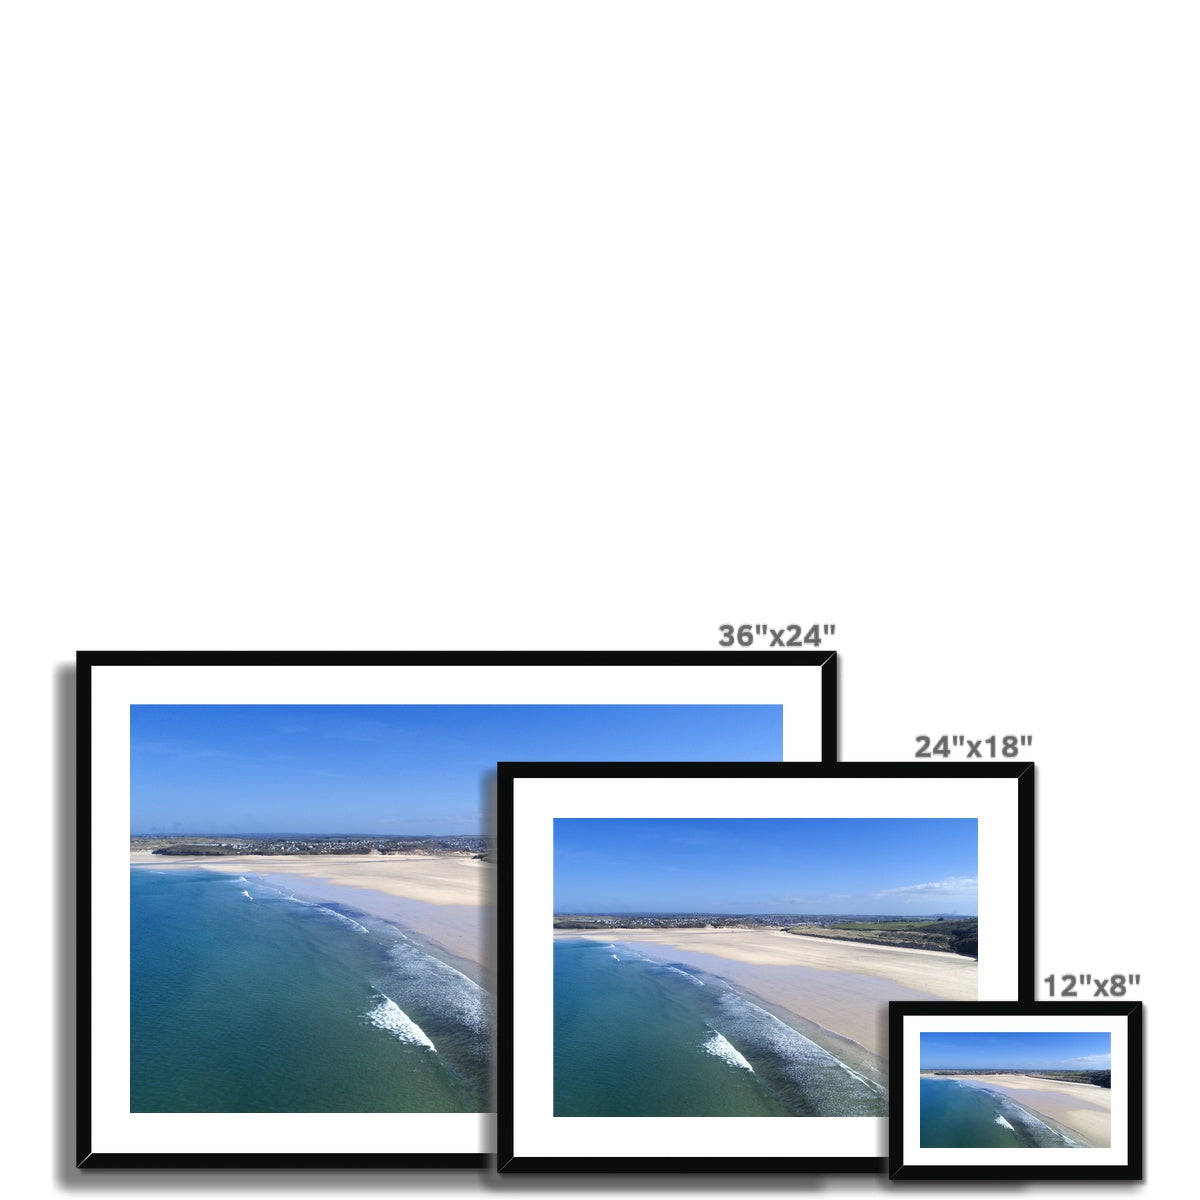 porthkidney beach frame sizes